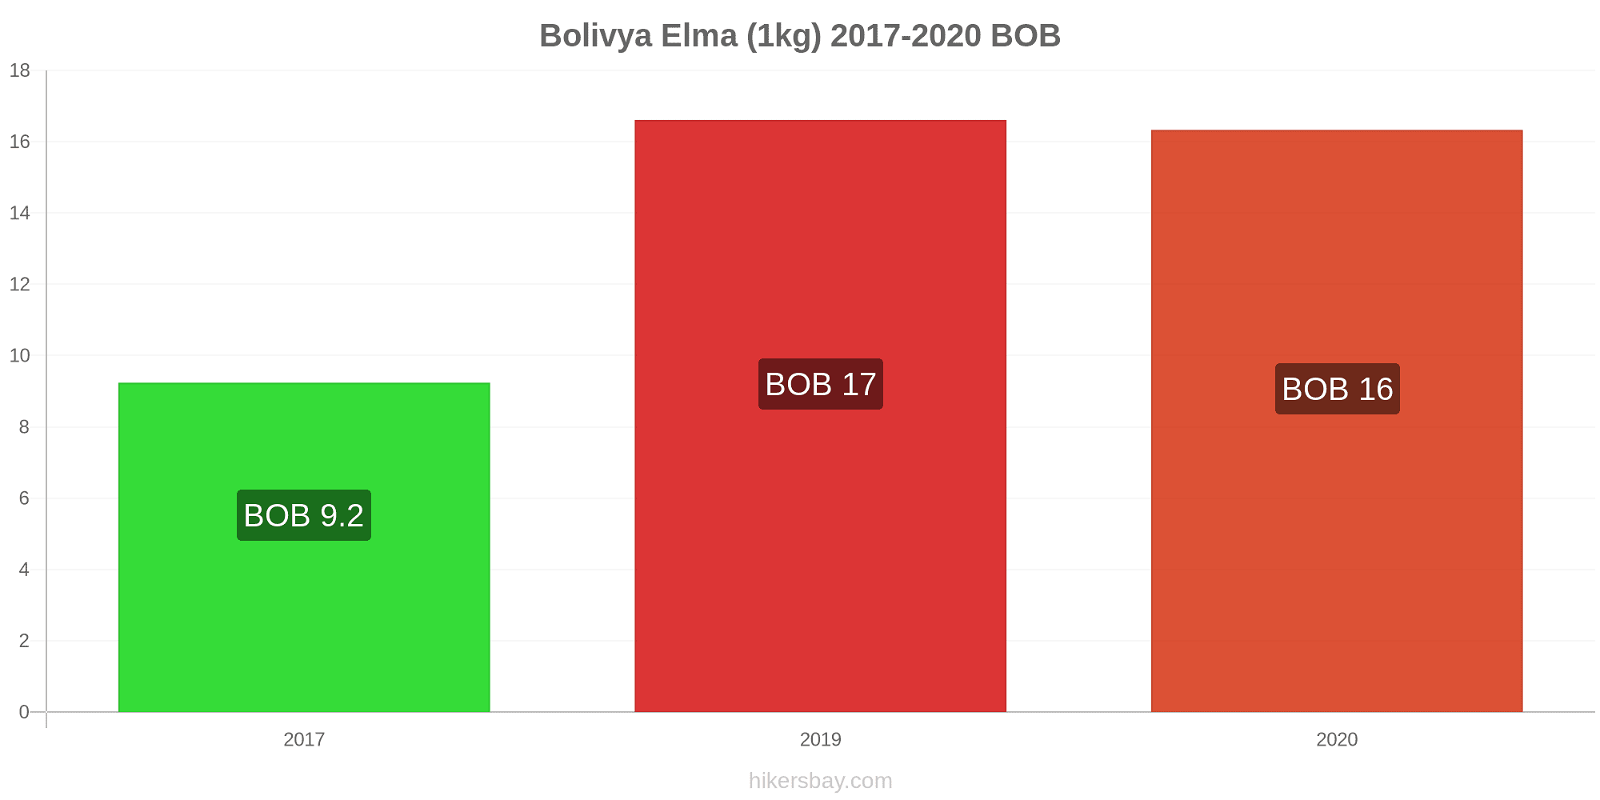 Bolivya fiyat değişiklikleri Elma (1kg) hikersbay.com